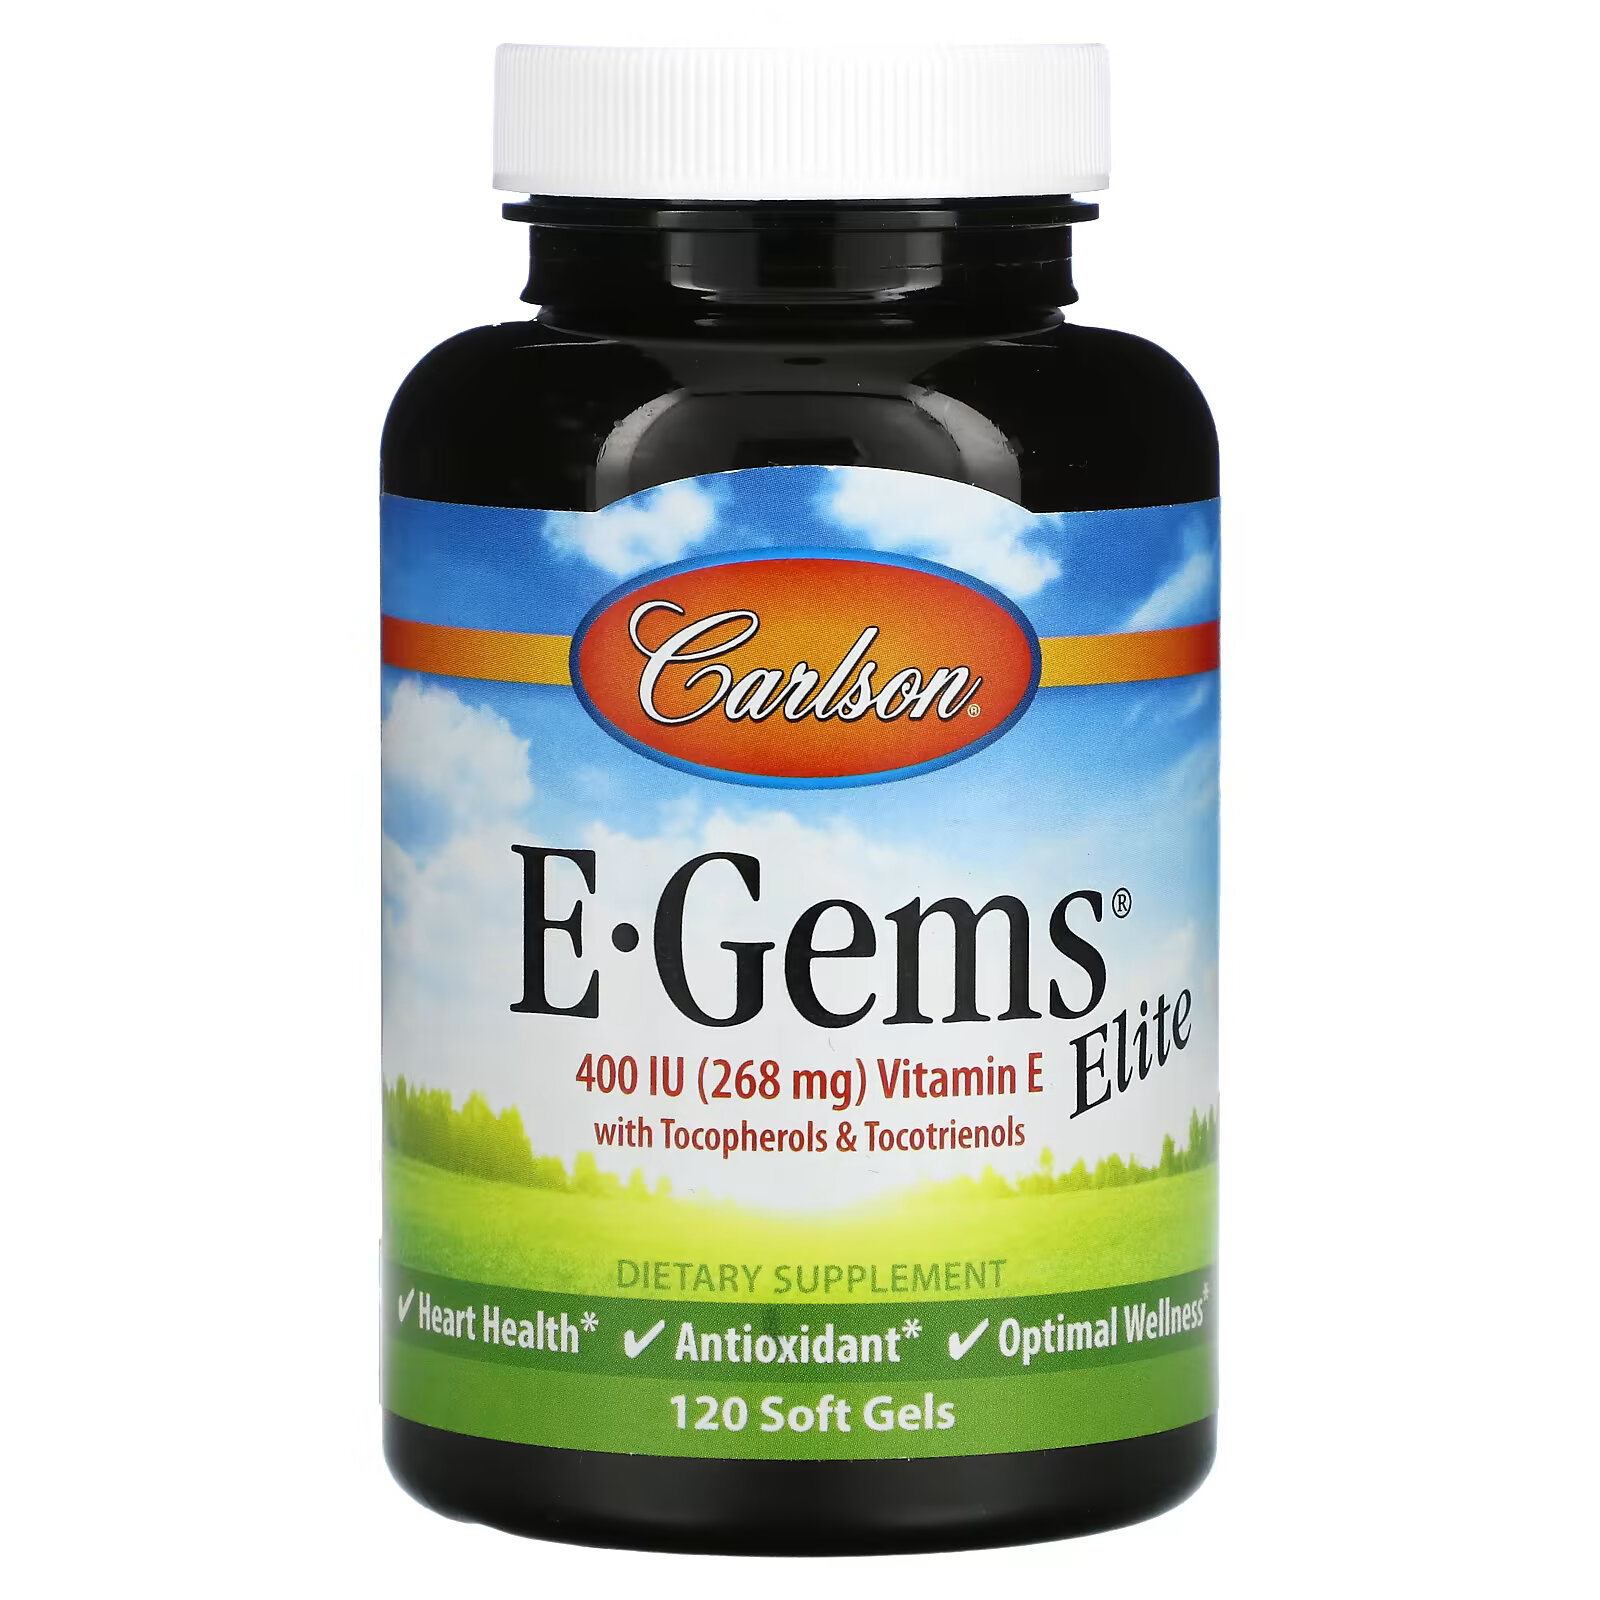 Carlson, E-Gems Elite, витамин E, 268 мг (400 МЕ), 120 мягких таблеток carlson e gems plus 268 мг 400 ме 250 мягких таблеток